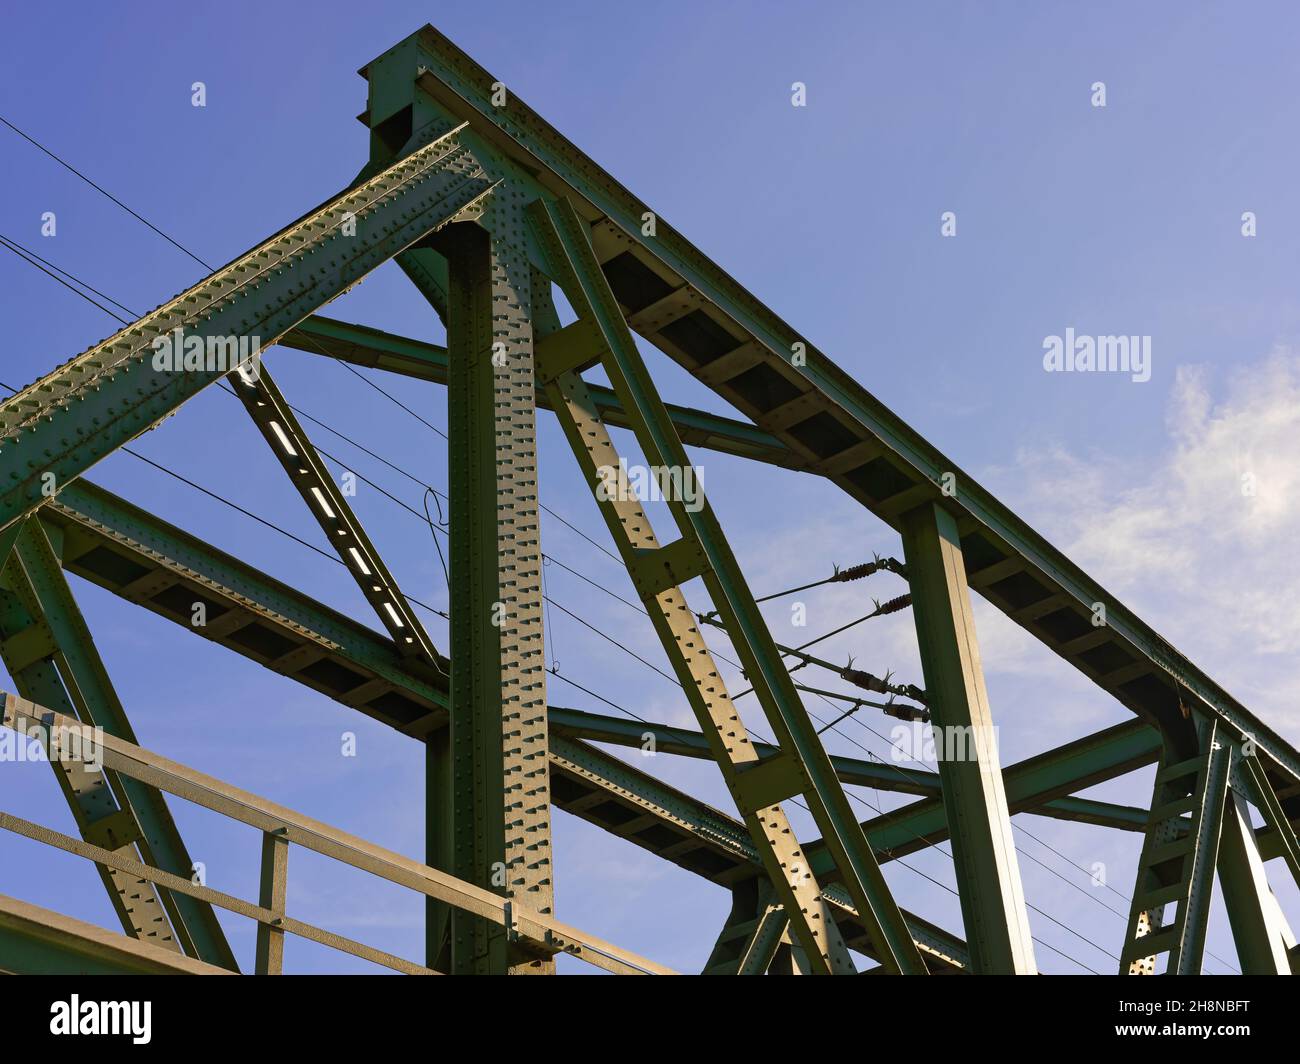 Eisenbahnbrücke vor blauem Himmel, Konstruktionsdetails mit Nieten, wenig Wolken Stock Photo